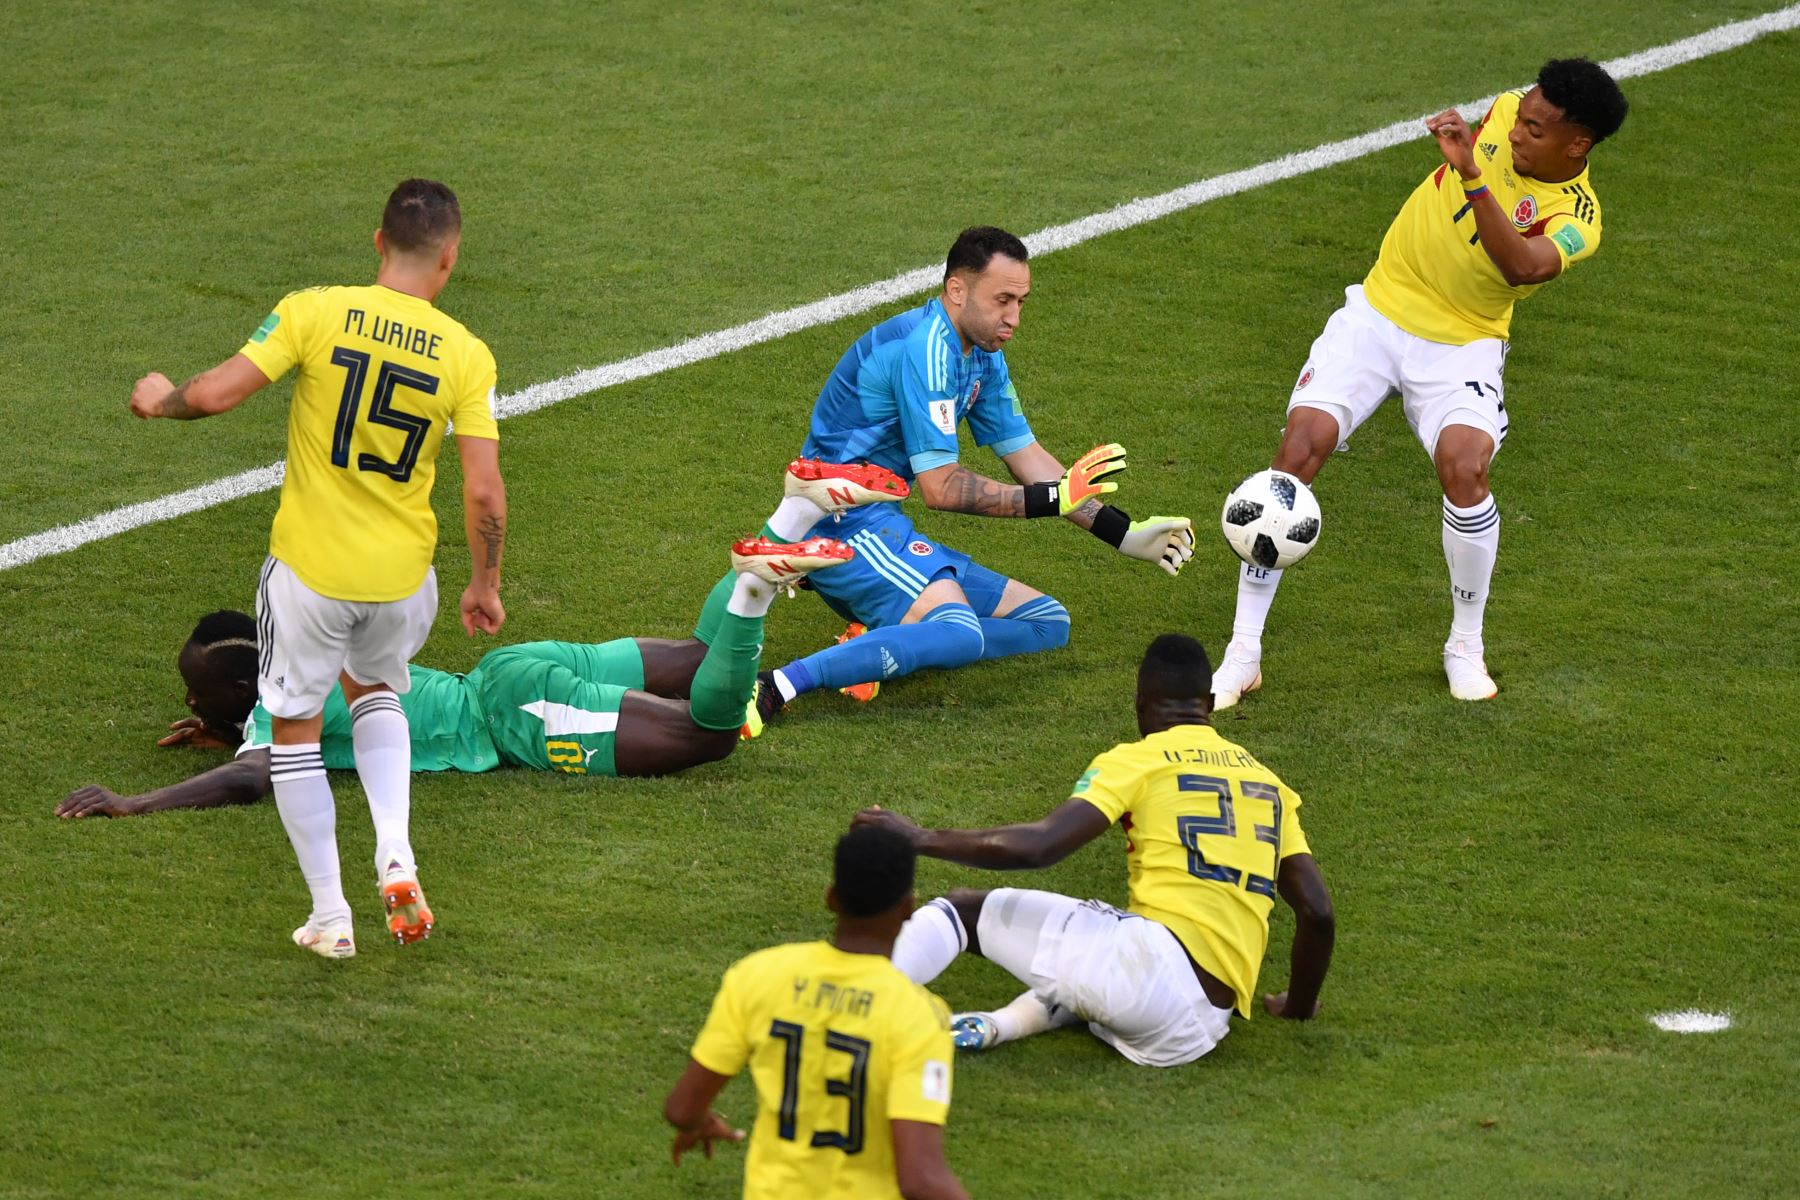 El portero colombiano David Ospina (C) detiene el balón durante el partido de fútbol Rusia 2018 del Grupo H entre Senegal y Colombia en el Samara Arena en Samara el 28 de junio de 2018. / AFP